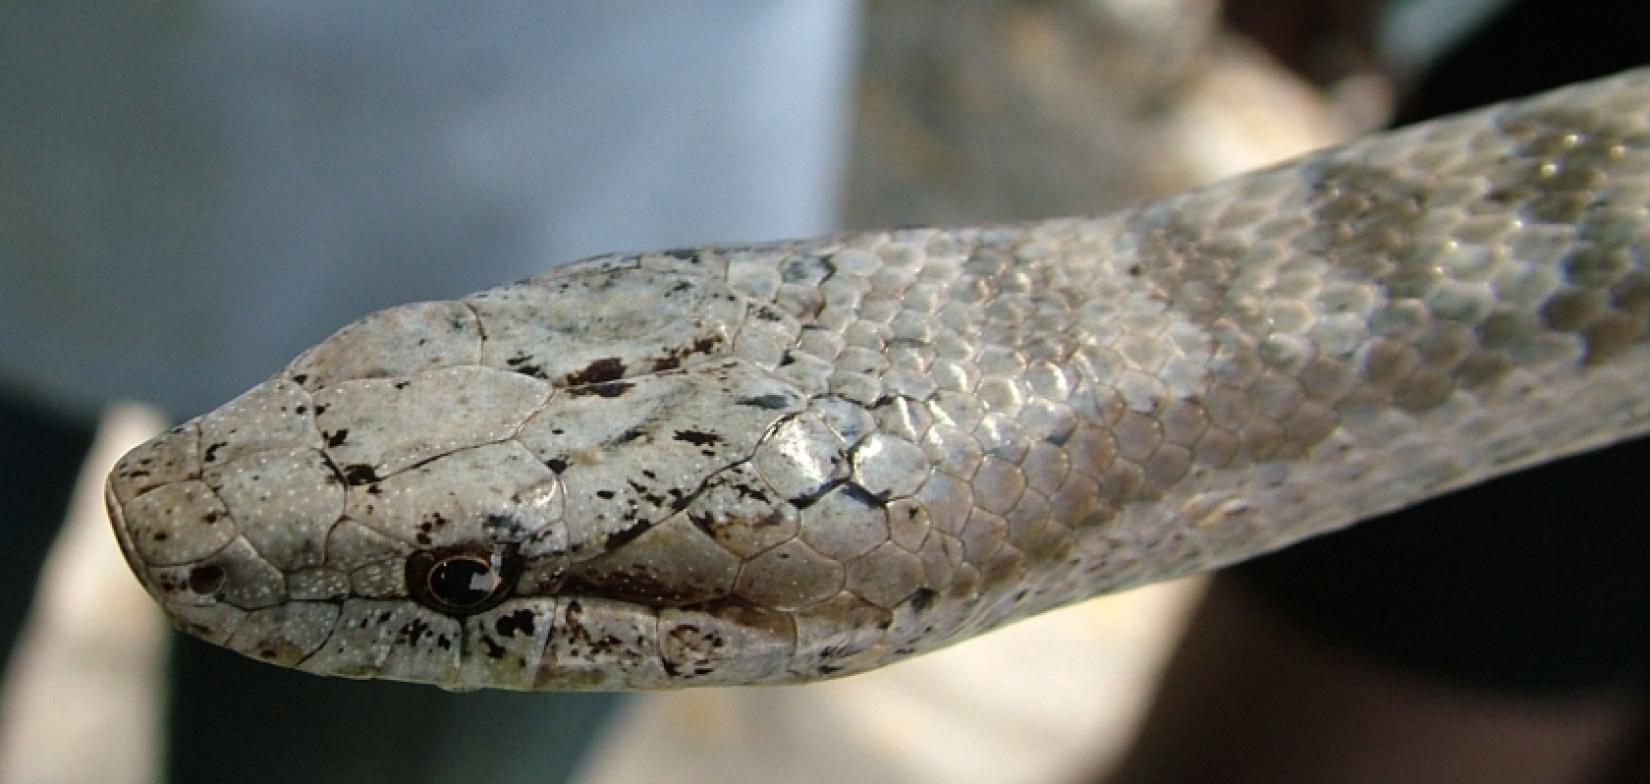 A Antiguan Racer, outrora a cobra mais rara do mundo, fez um incrível retorno.